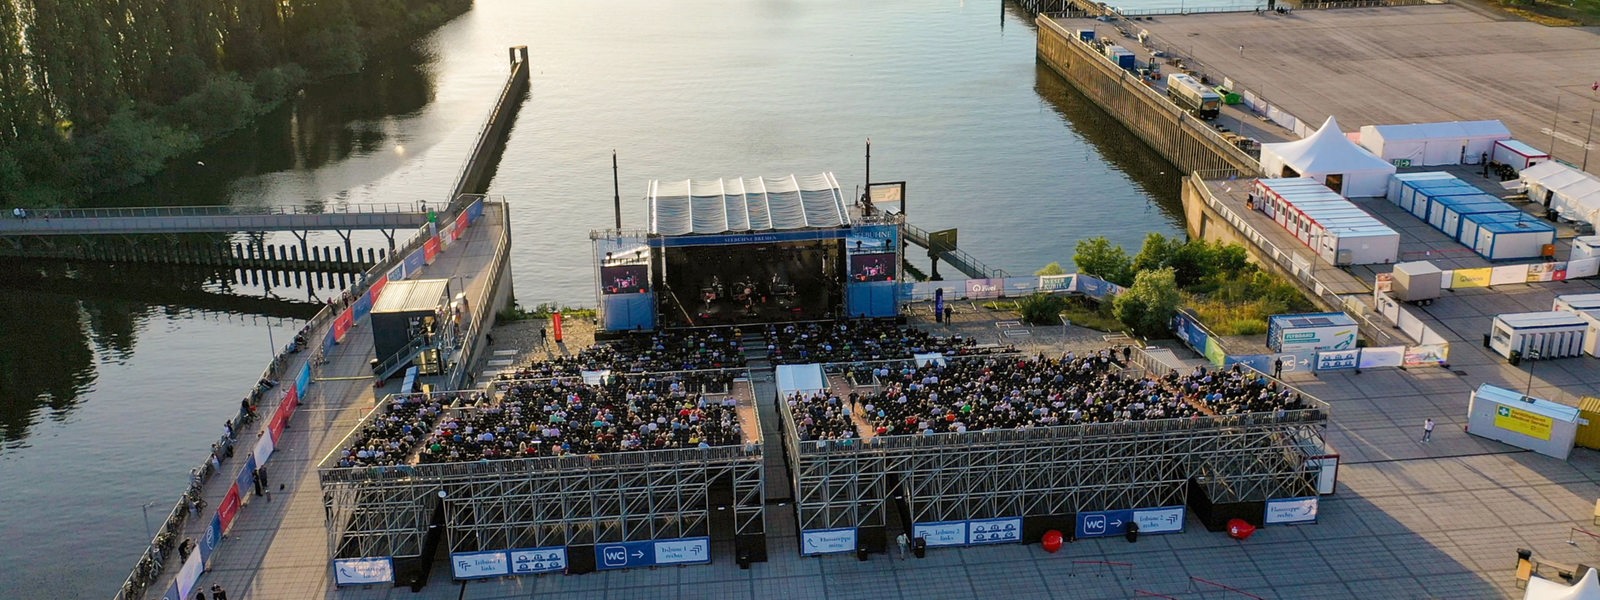 Luftaufnahme einer Open-Air-Bühne mit vollbesetztem Auditorium an einem Hafenbecken